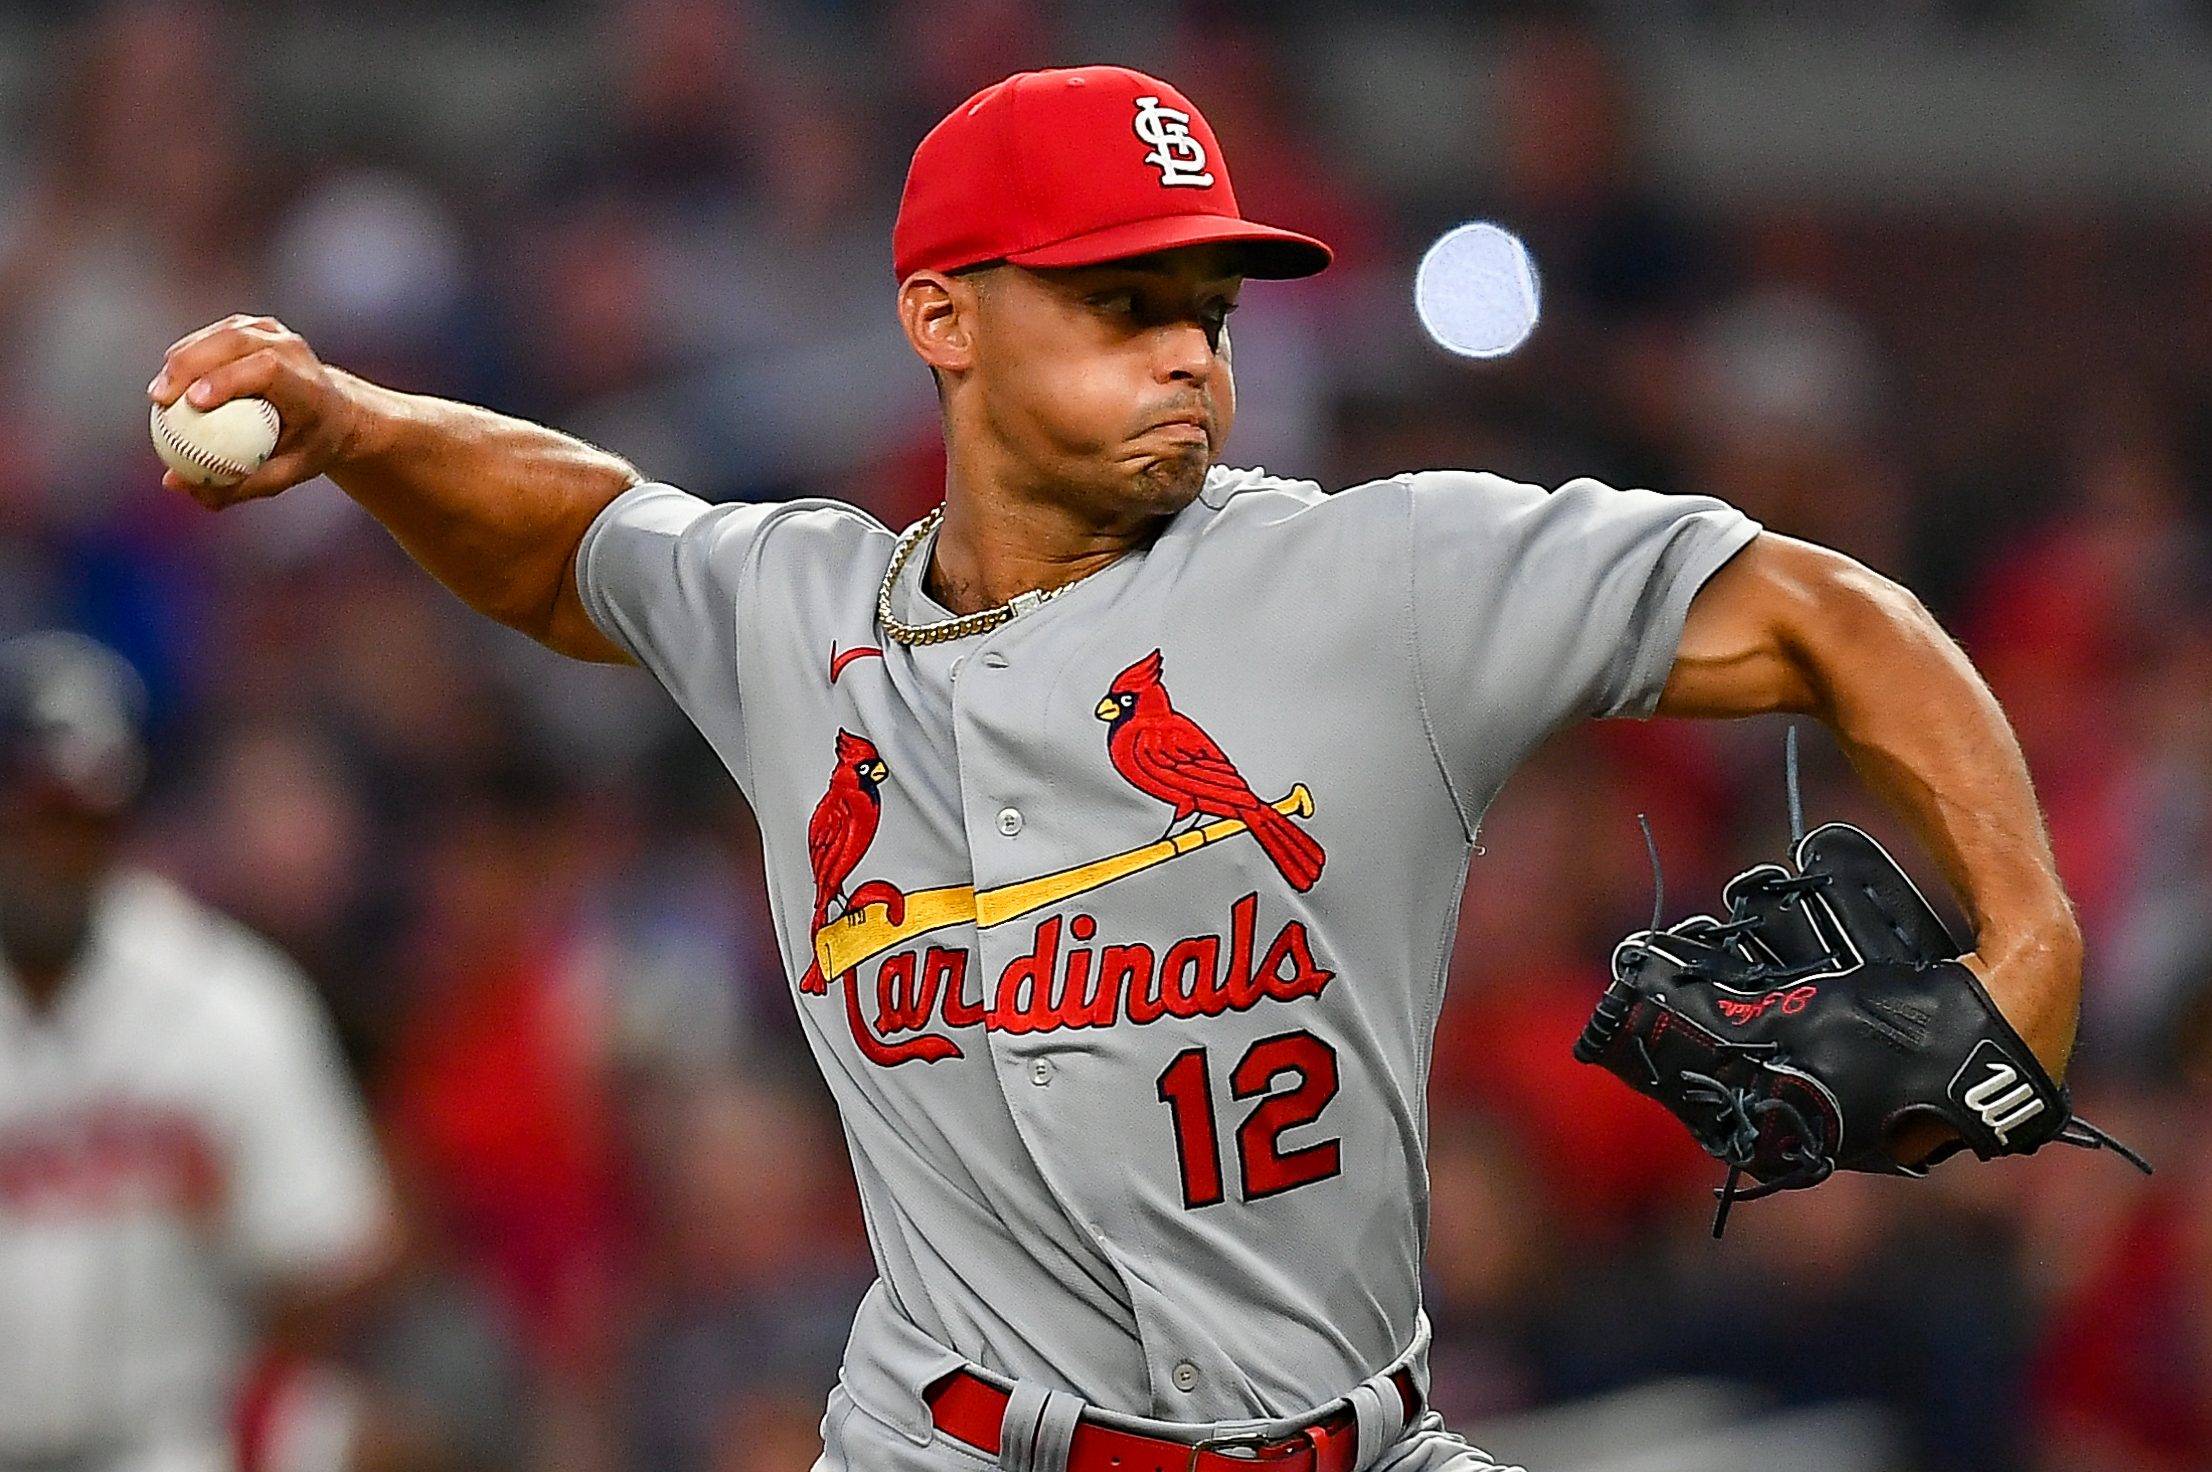 Hard-throwing Cardinals closer Jordan Hicks has torn elbow ligament